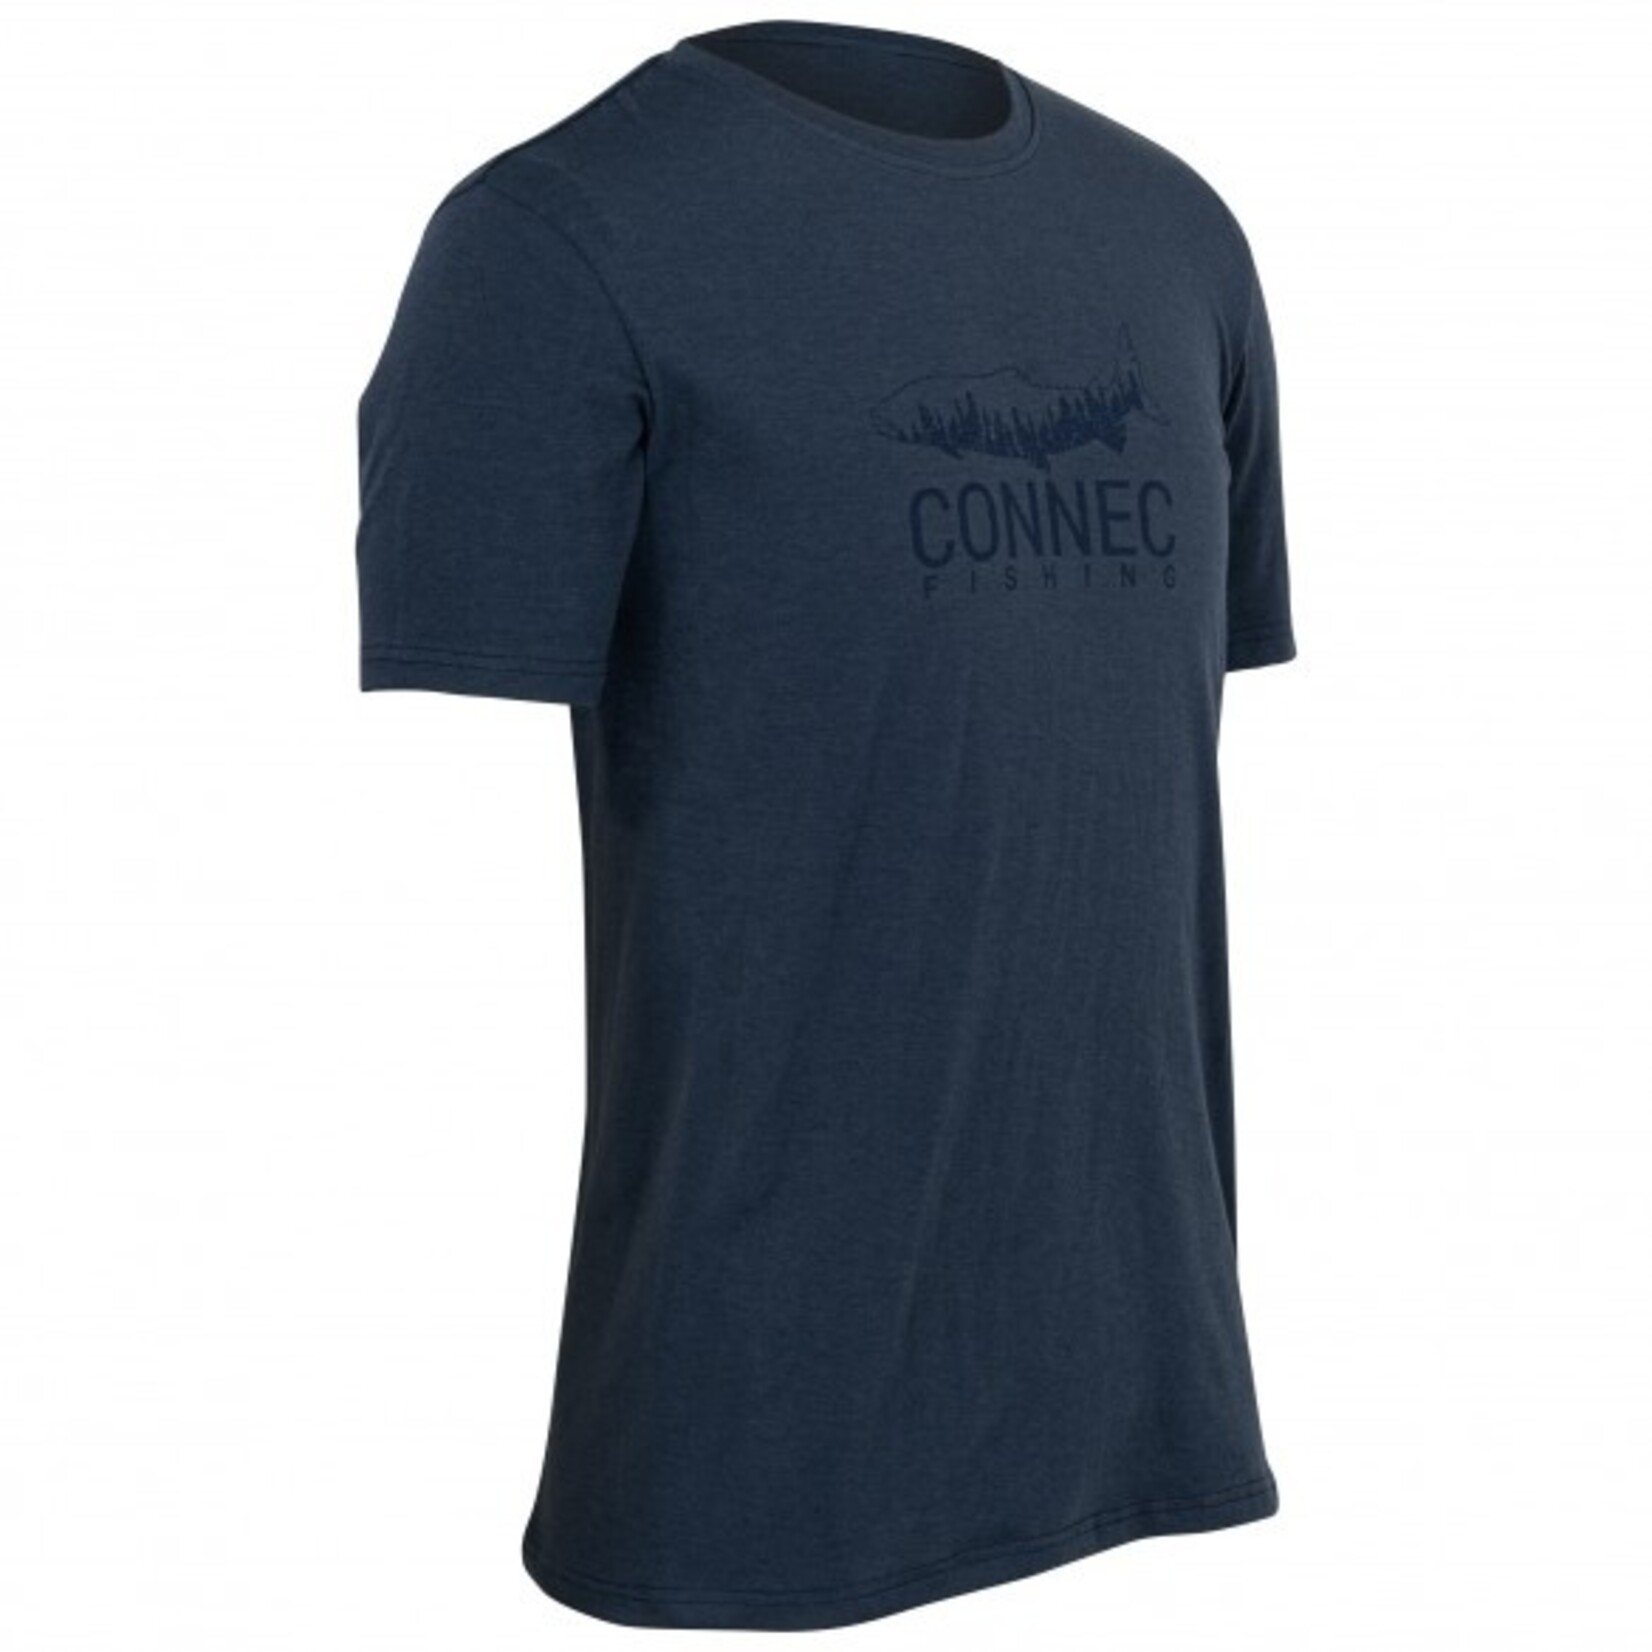 Connec Connec Trail T-Shirt